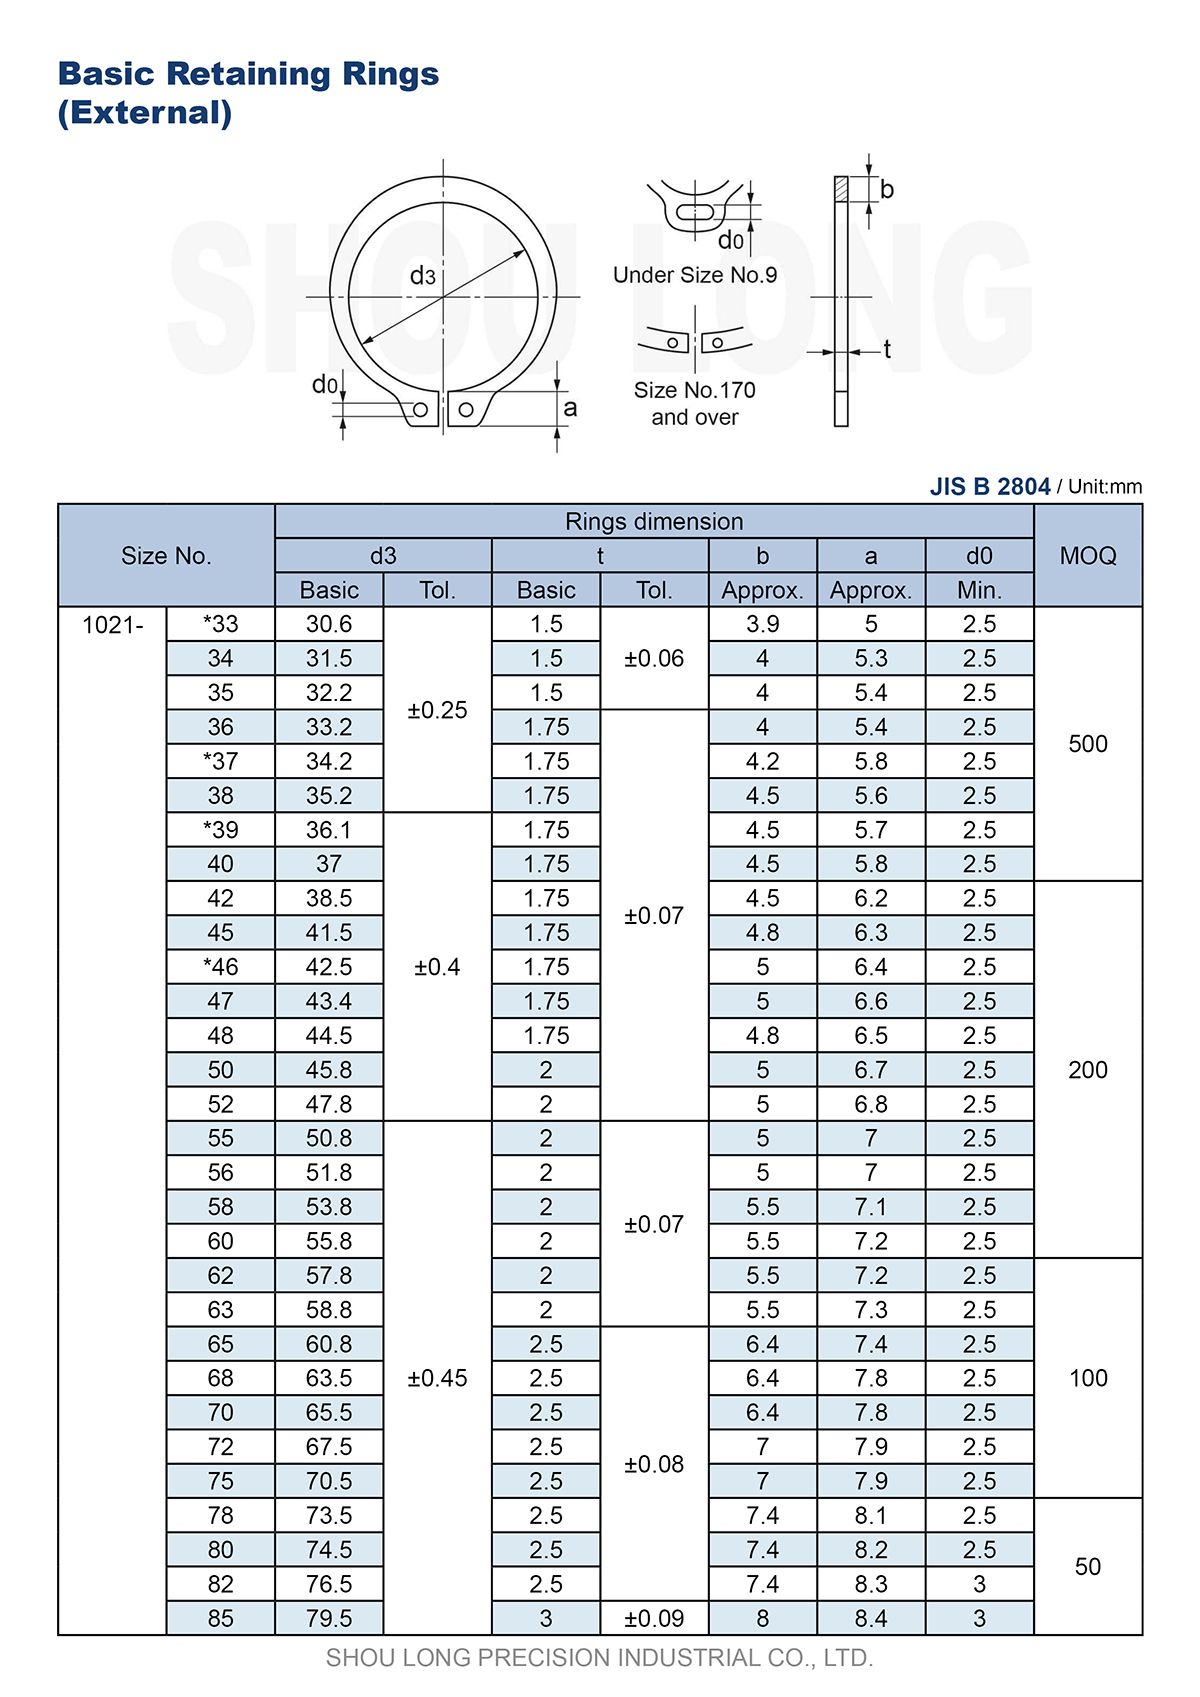 Спецификация метрических базовых удерживающих колец для вала B2804-2 по стандарту JIS